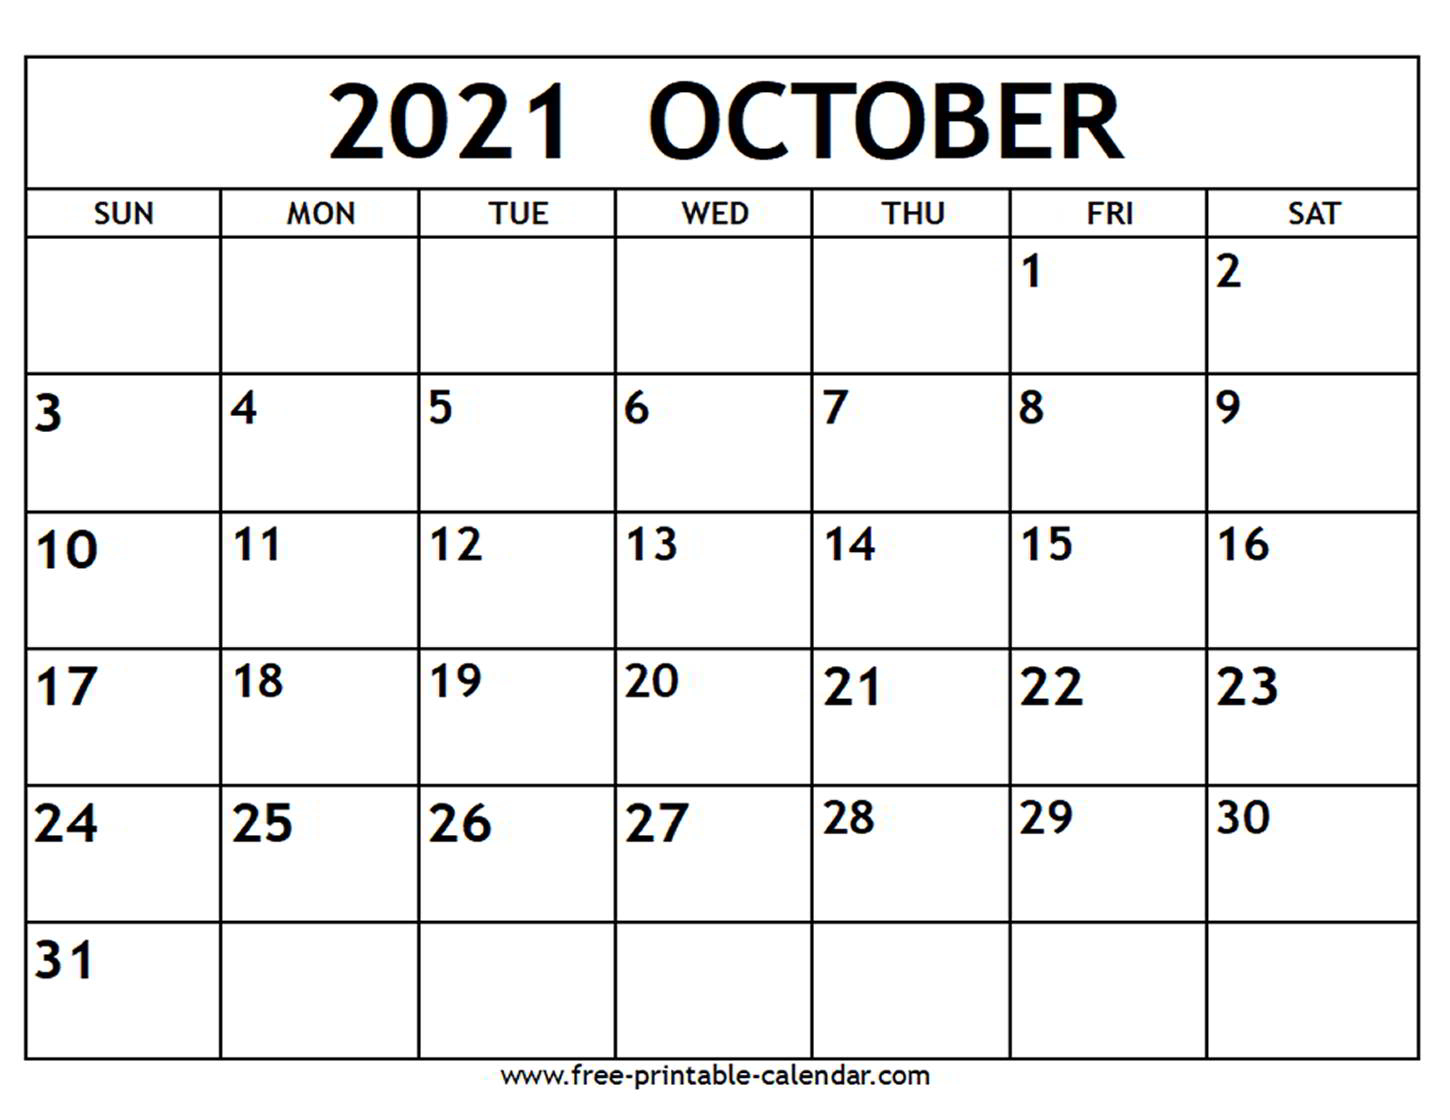 October 2021 Calendar - Free-Printable-Calendar